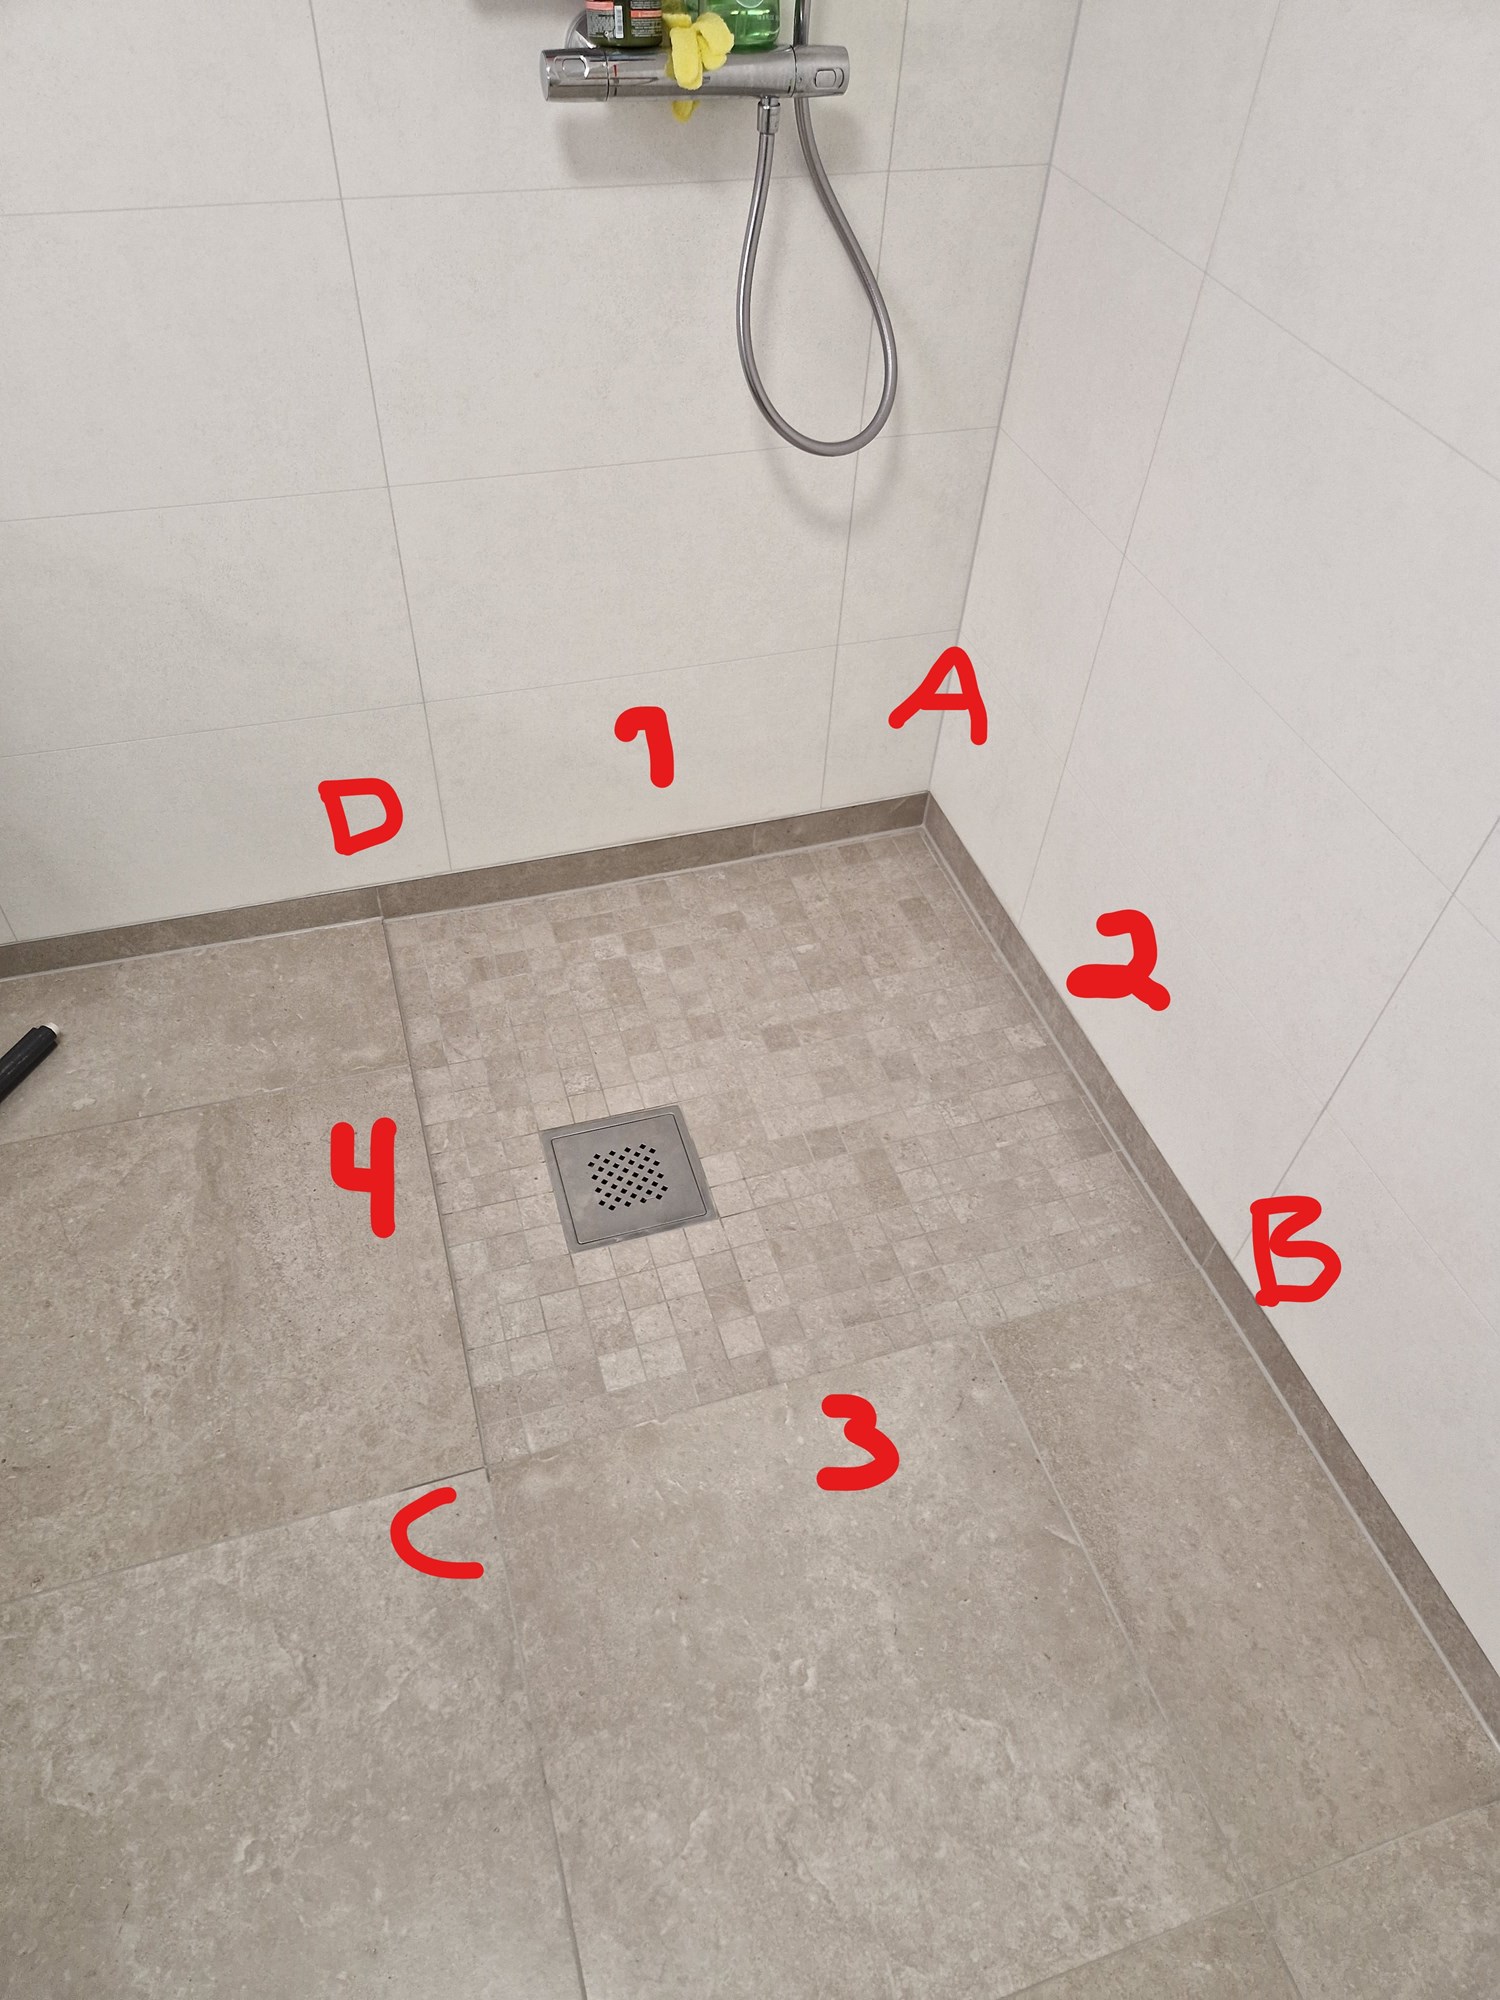 Godkjent fall i dusj og montering av dusjdører - Dusjhjørne 90x90.jpg - TordMagne_